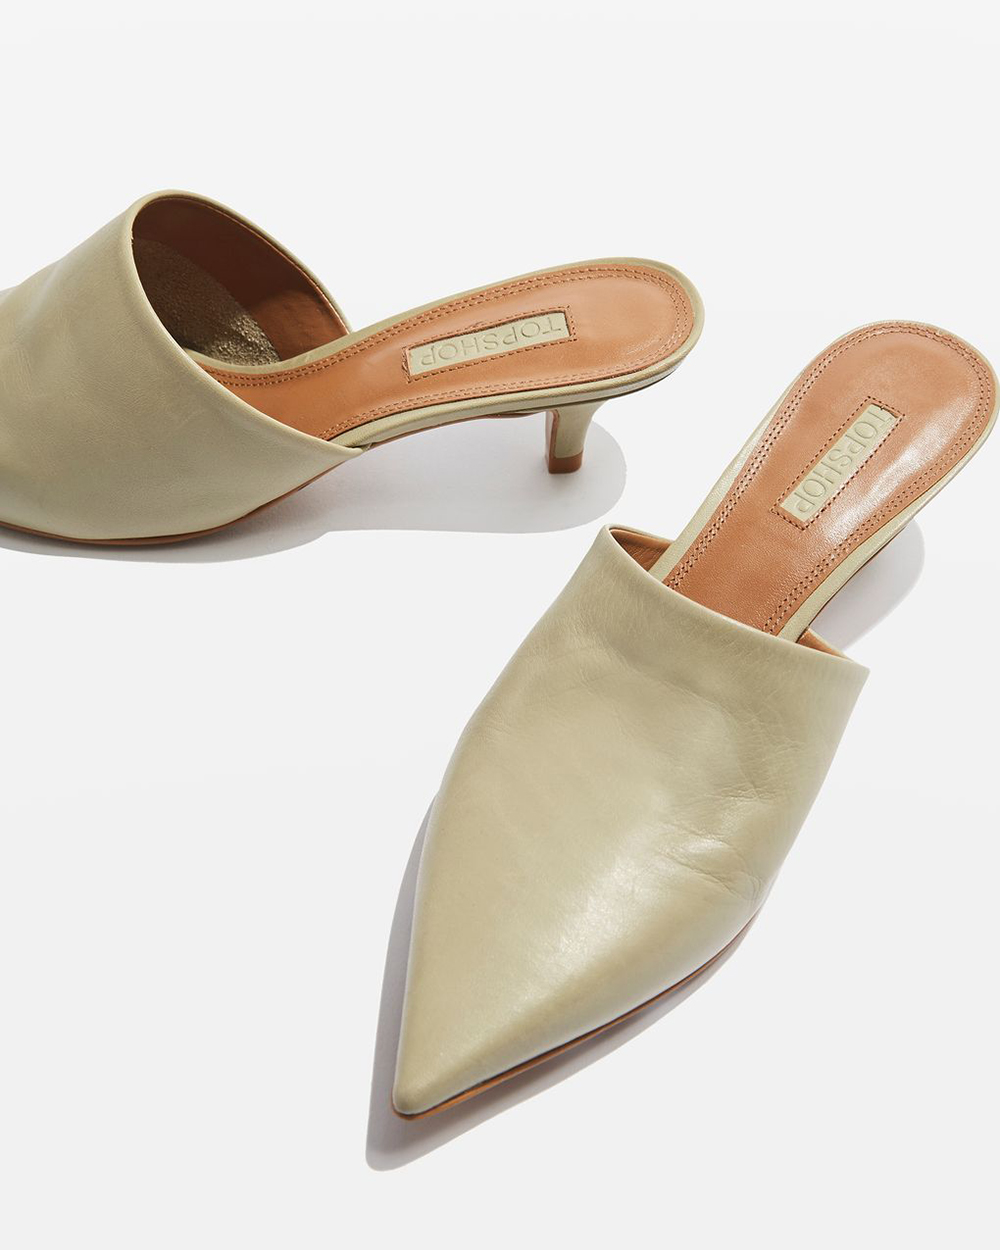 Topshop heels, $98